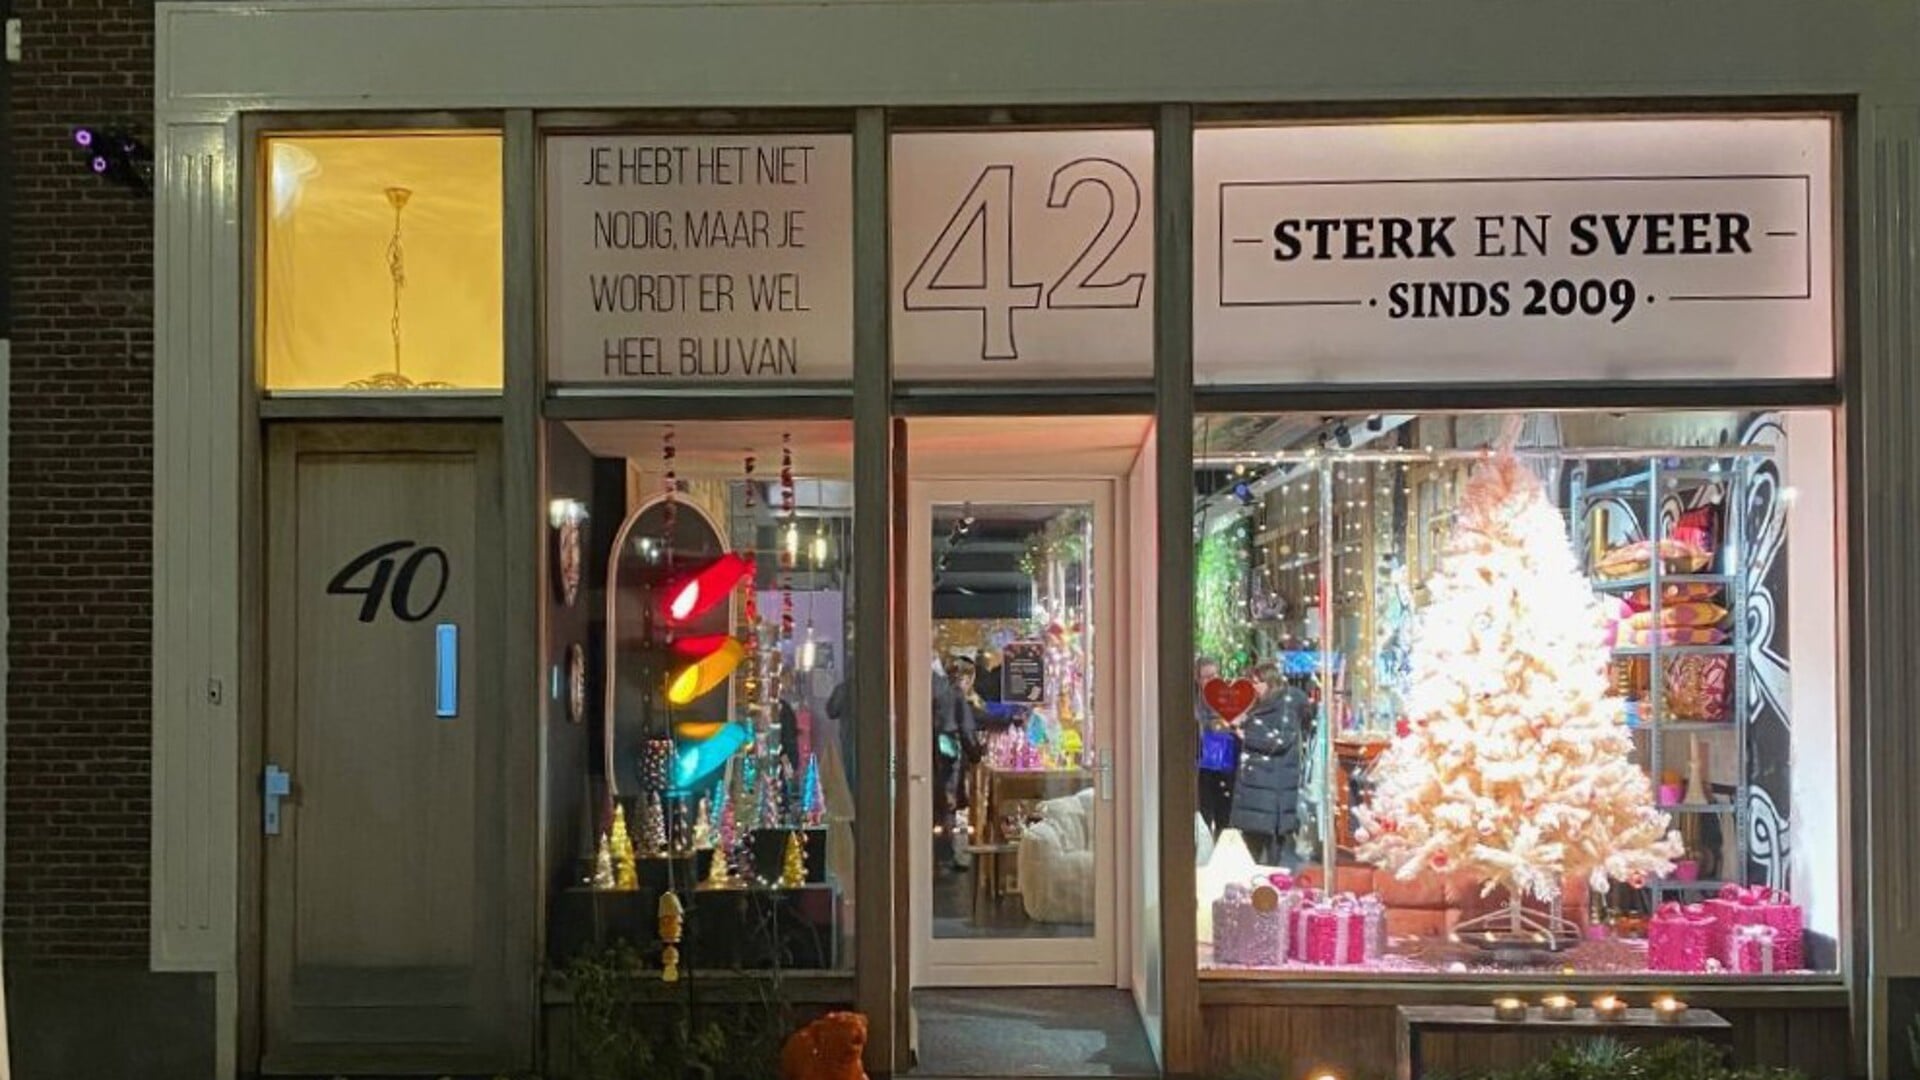 Kerstshow Sterk&sVeer trekt veel bezoekers in Sneek